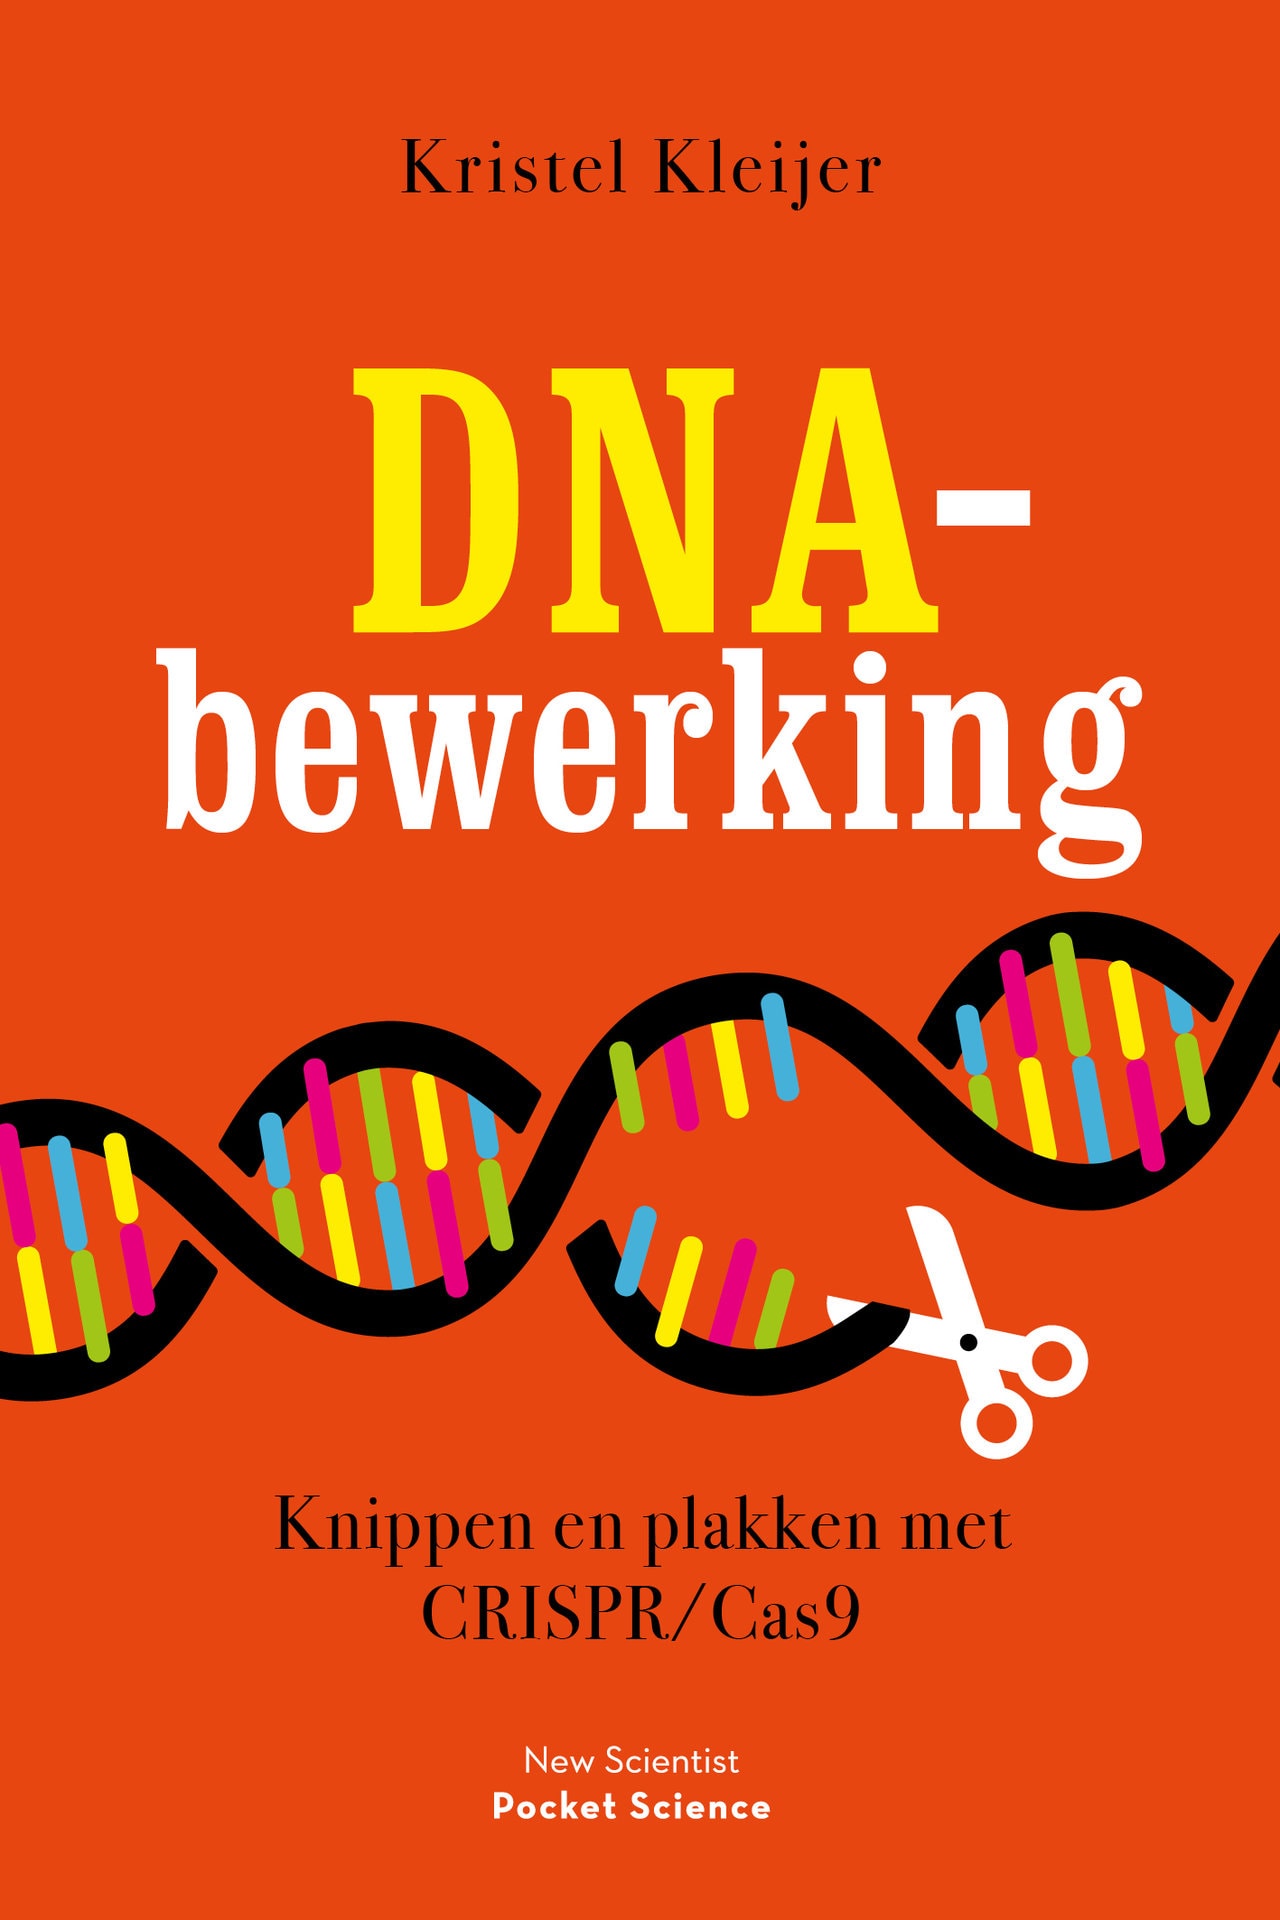 Afbeelding DNA-bewerking